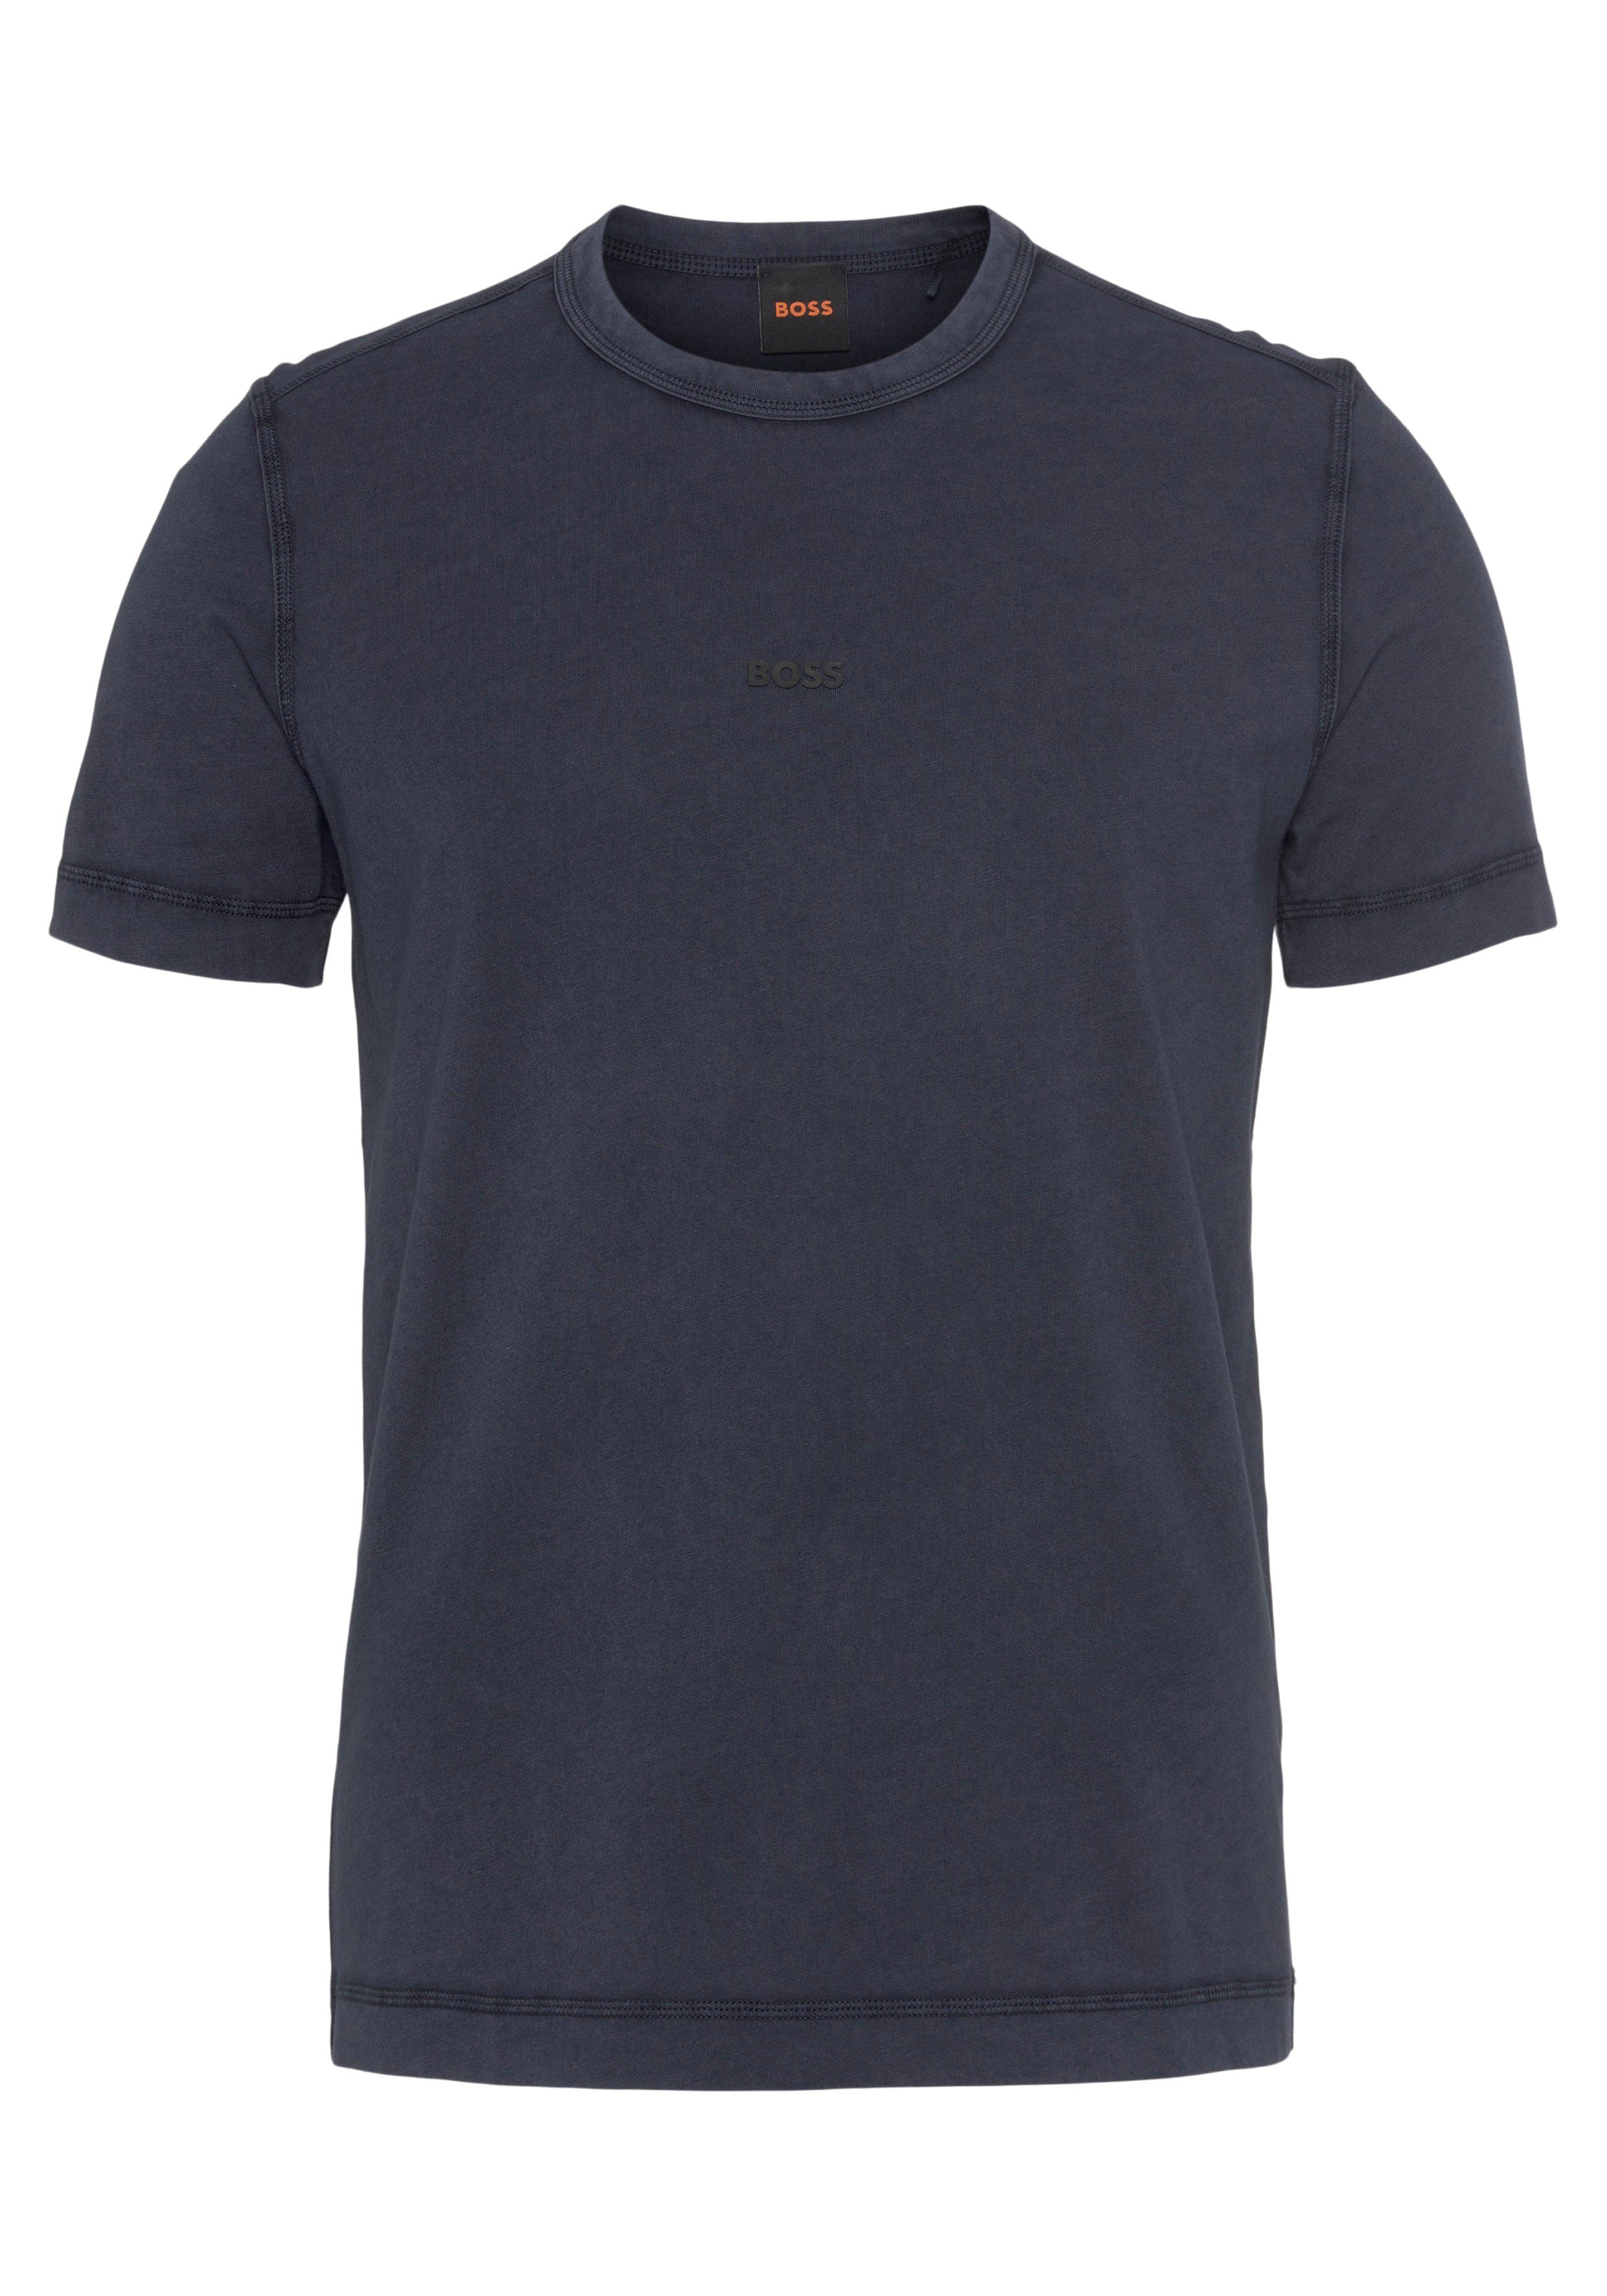 BOSS ORANGE T-Shirt Tokks mit BOSS ORANGE Markenlabel dark blue404